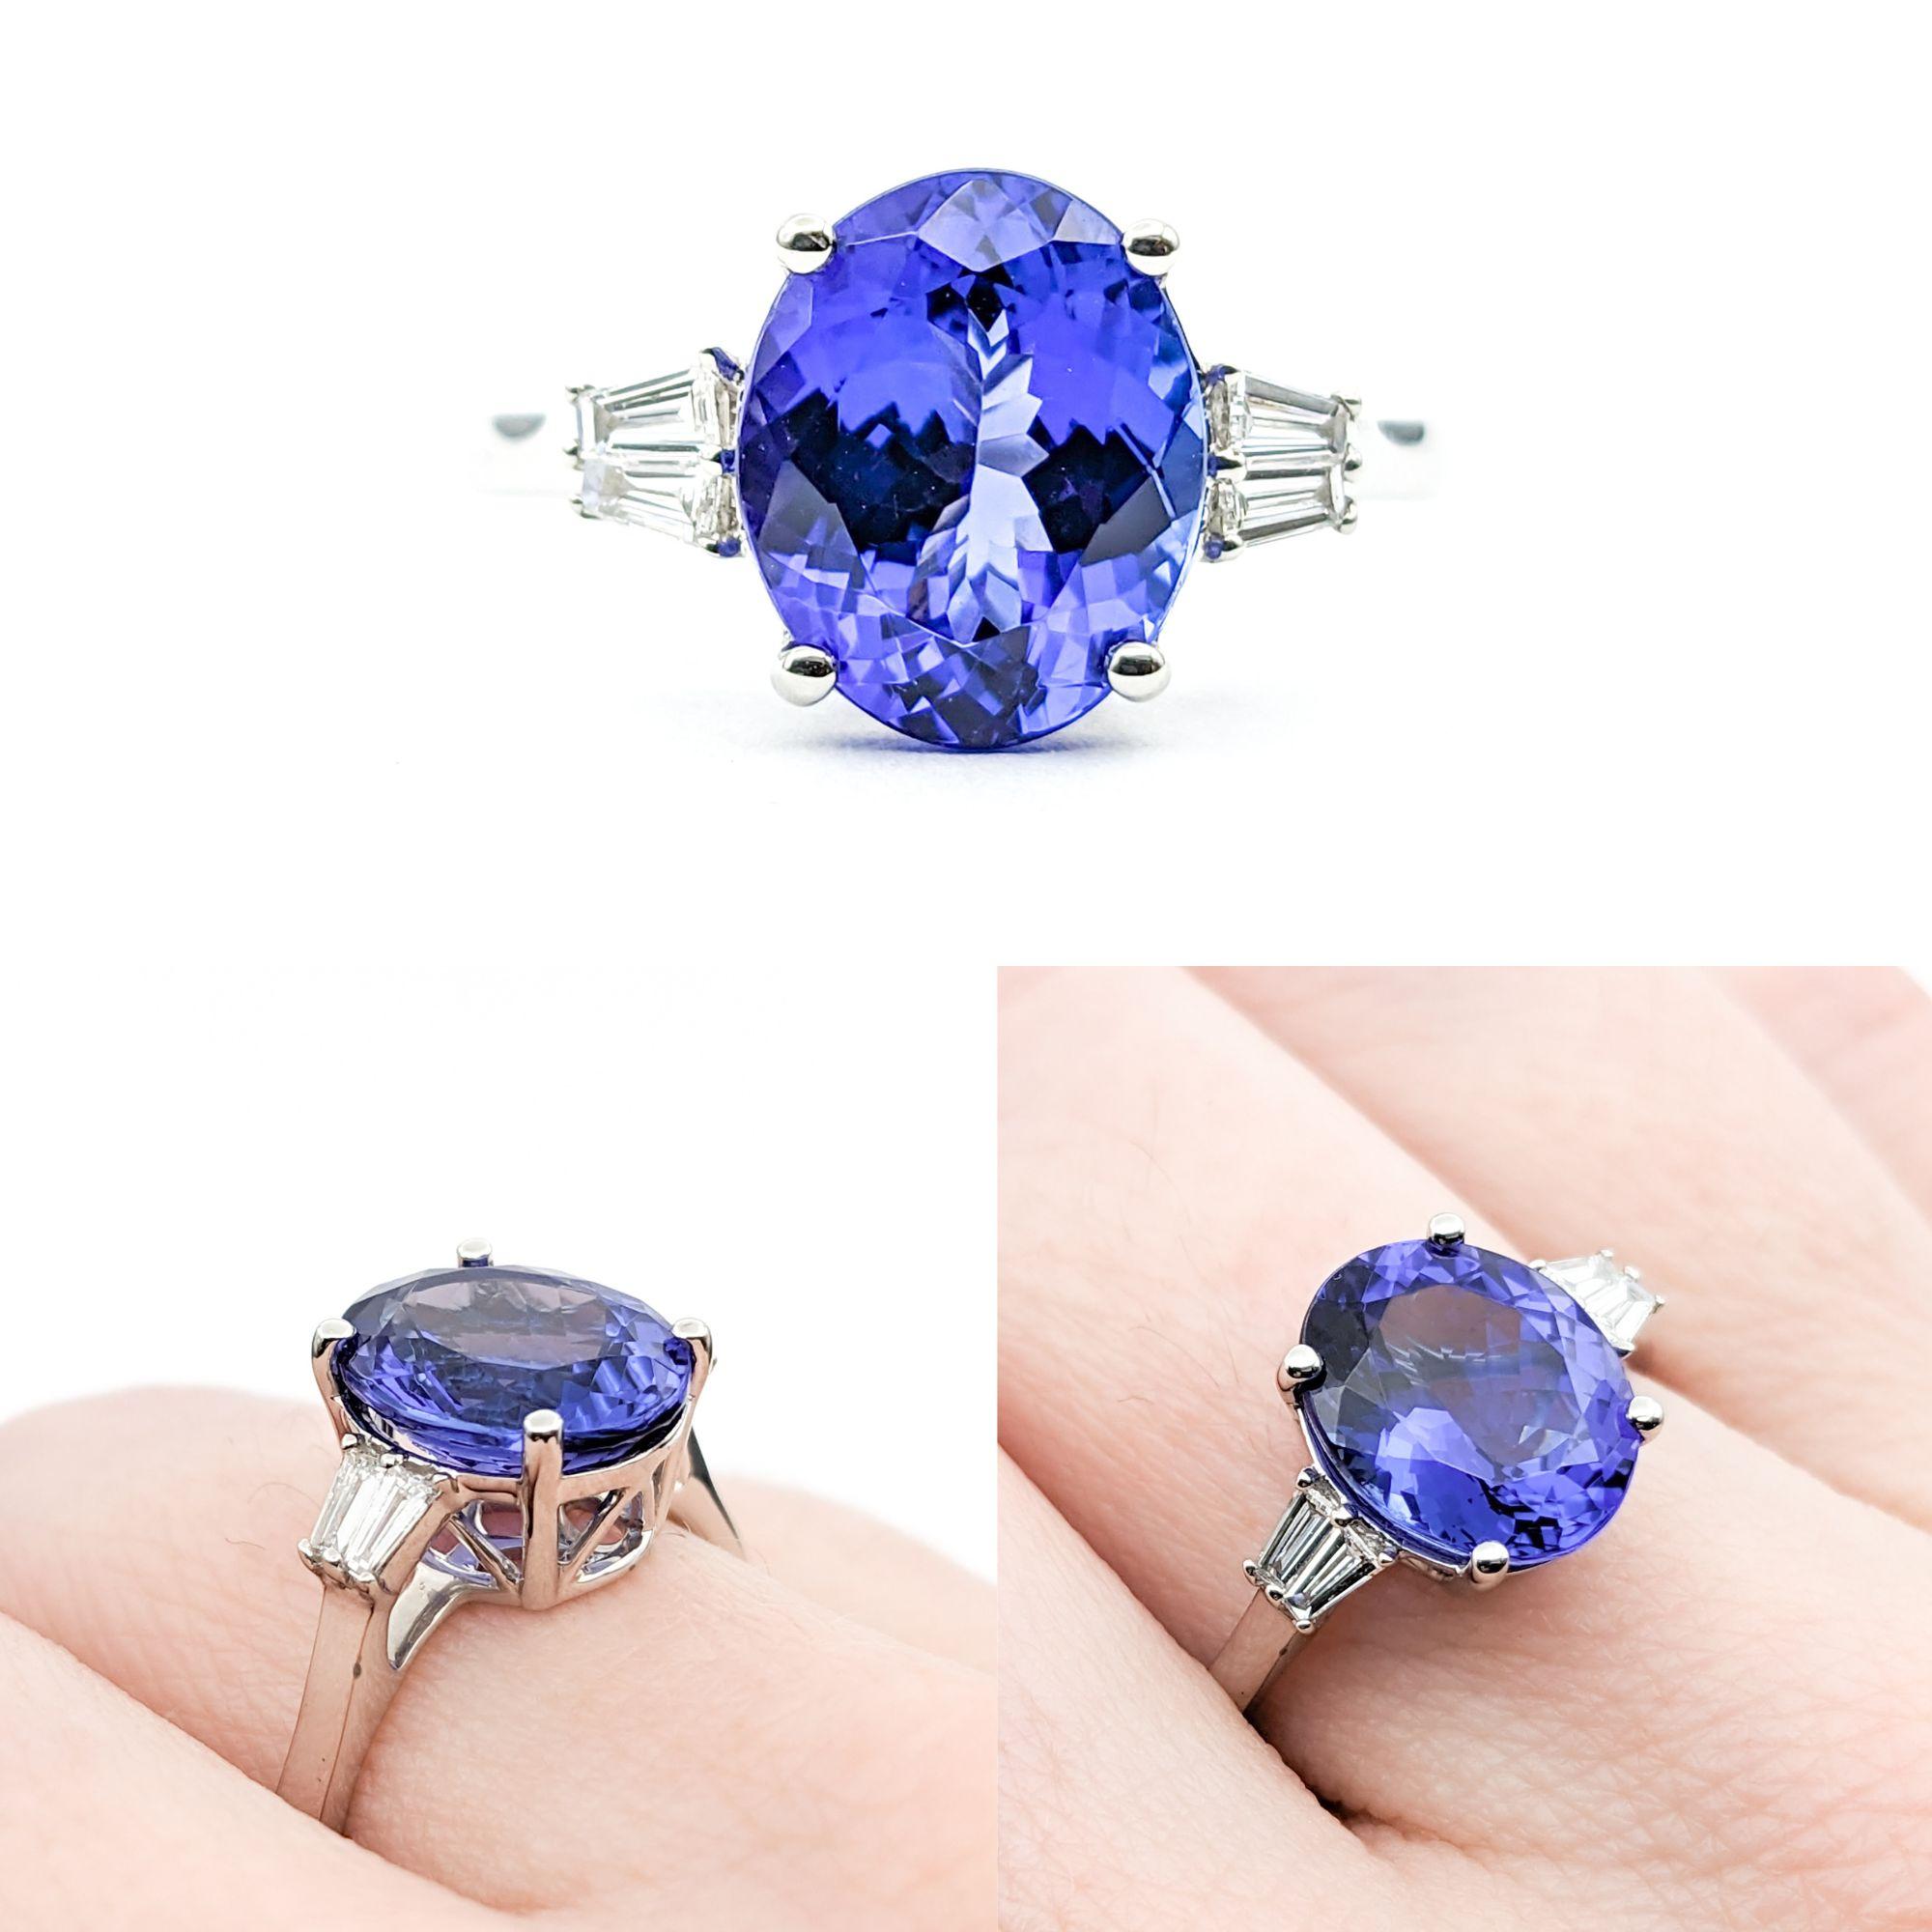 3ct Blue Tanzanite & Diamond Ring In 950pt platinum For Sale 1